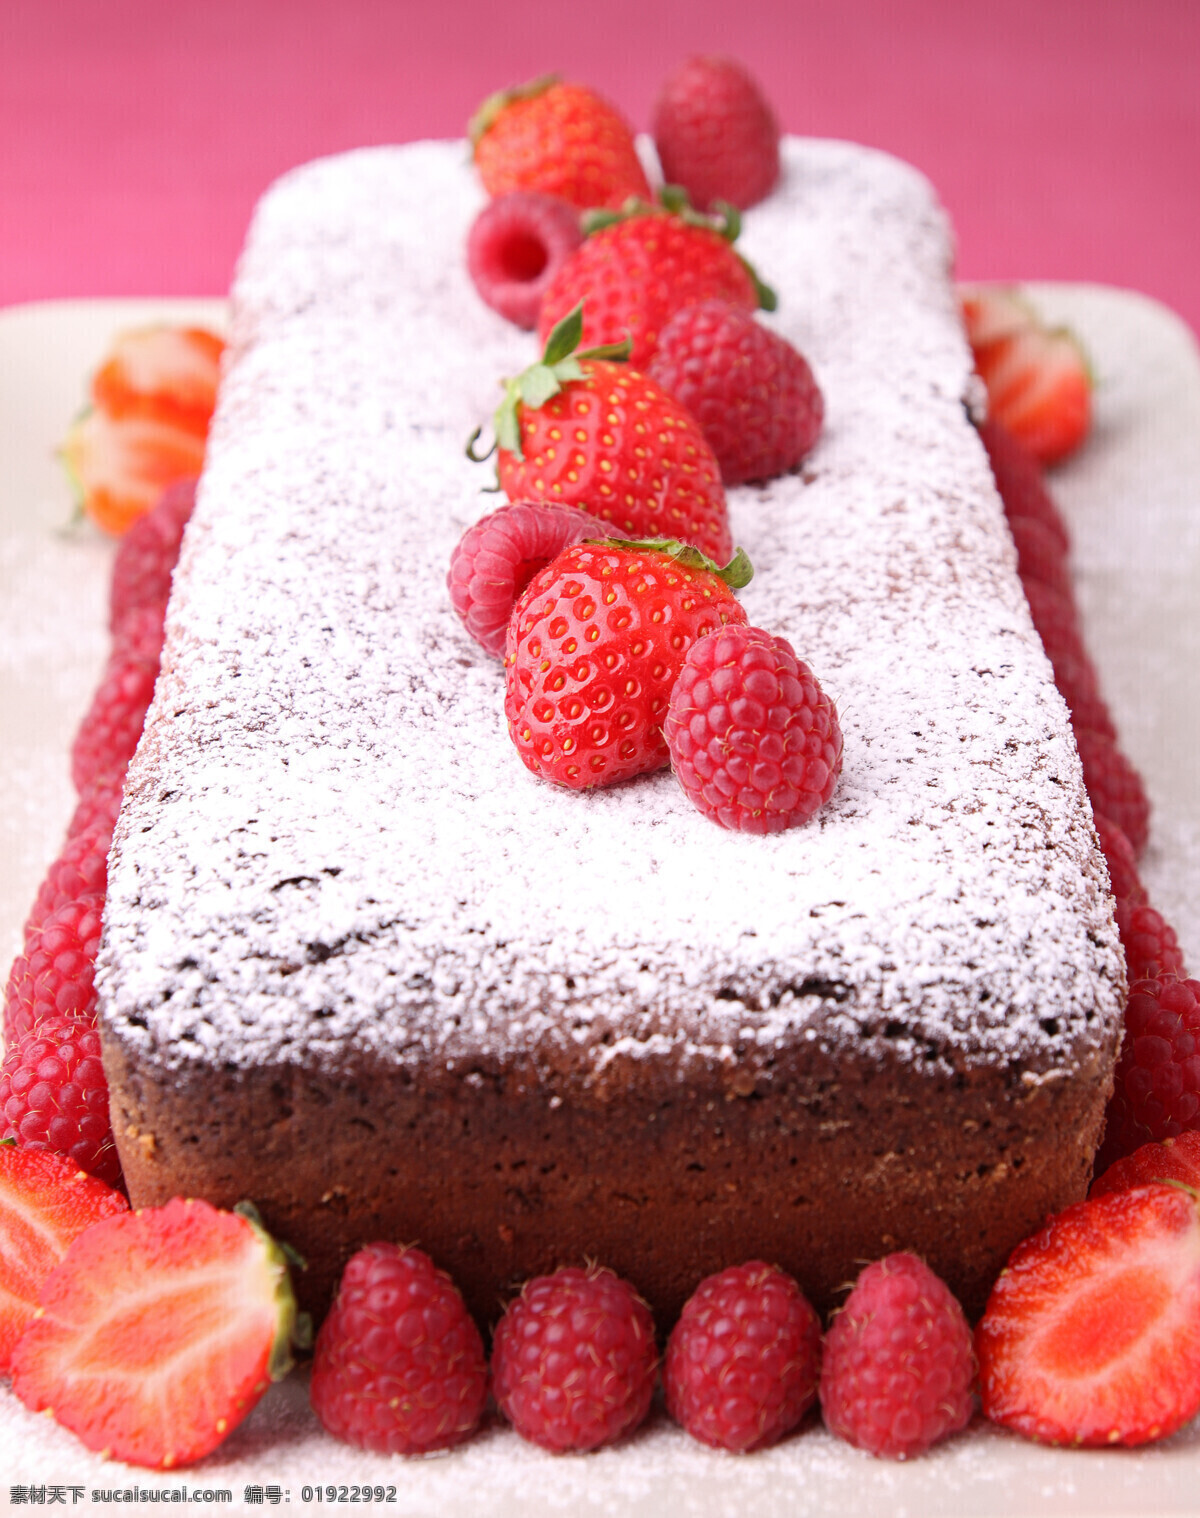 草莓 蛋糕 草莓蛋糕 生日蛋糕 水果蛋糕 美食 美味 生日蛋糕图片 餐饮美食